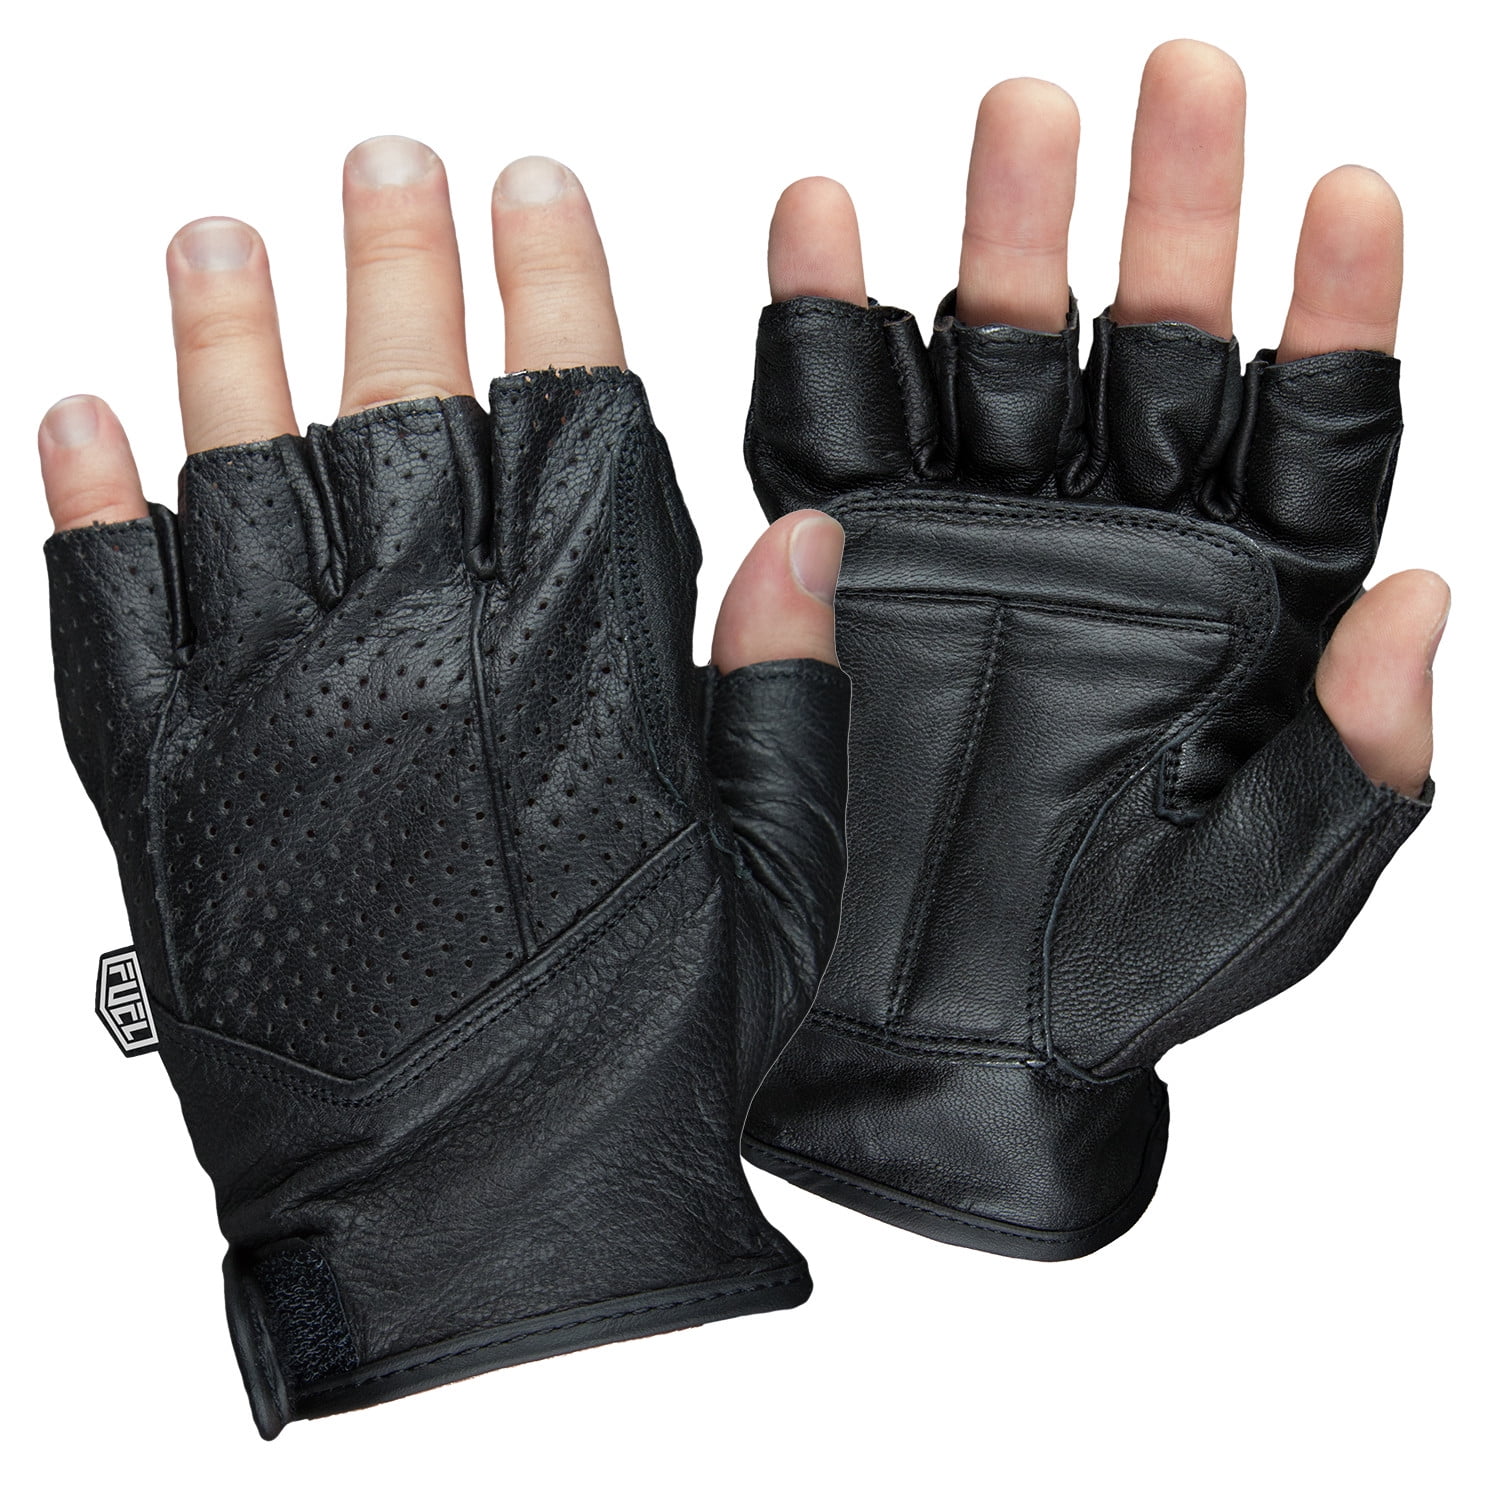 Pair of Black Stylish Leather Fingerless Gloves For Men DT 